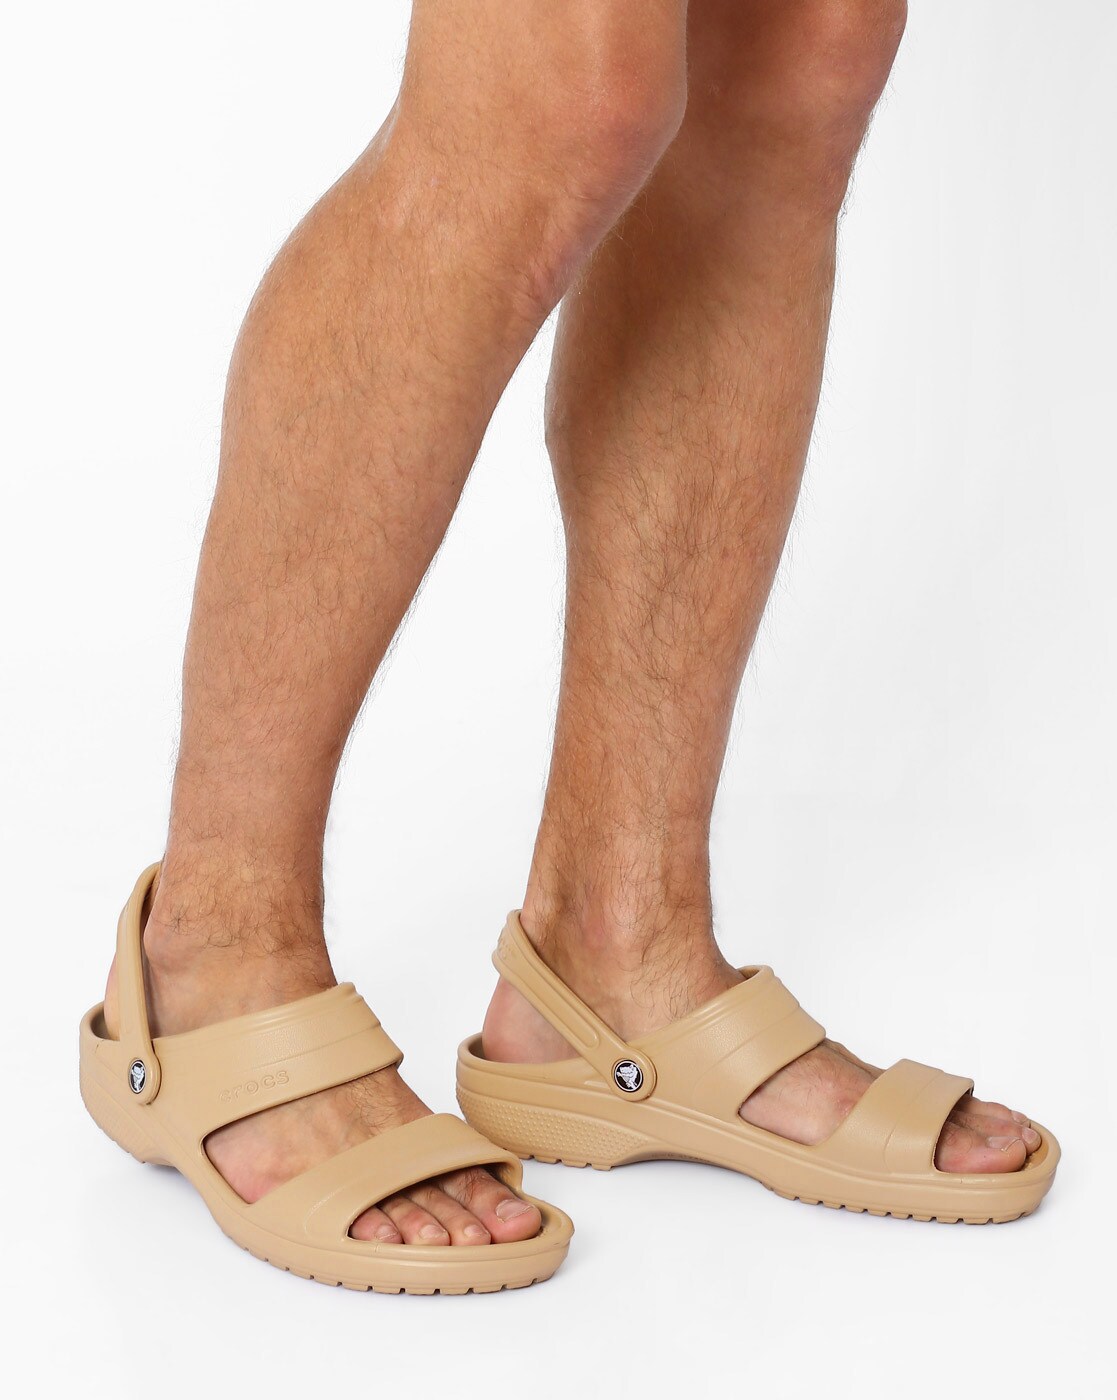 crocs waterproof sandals